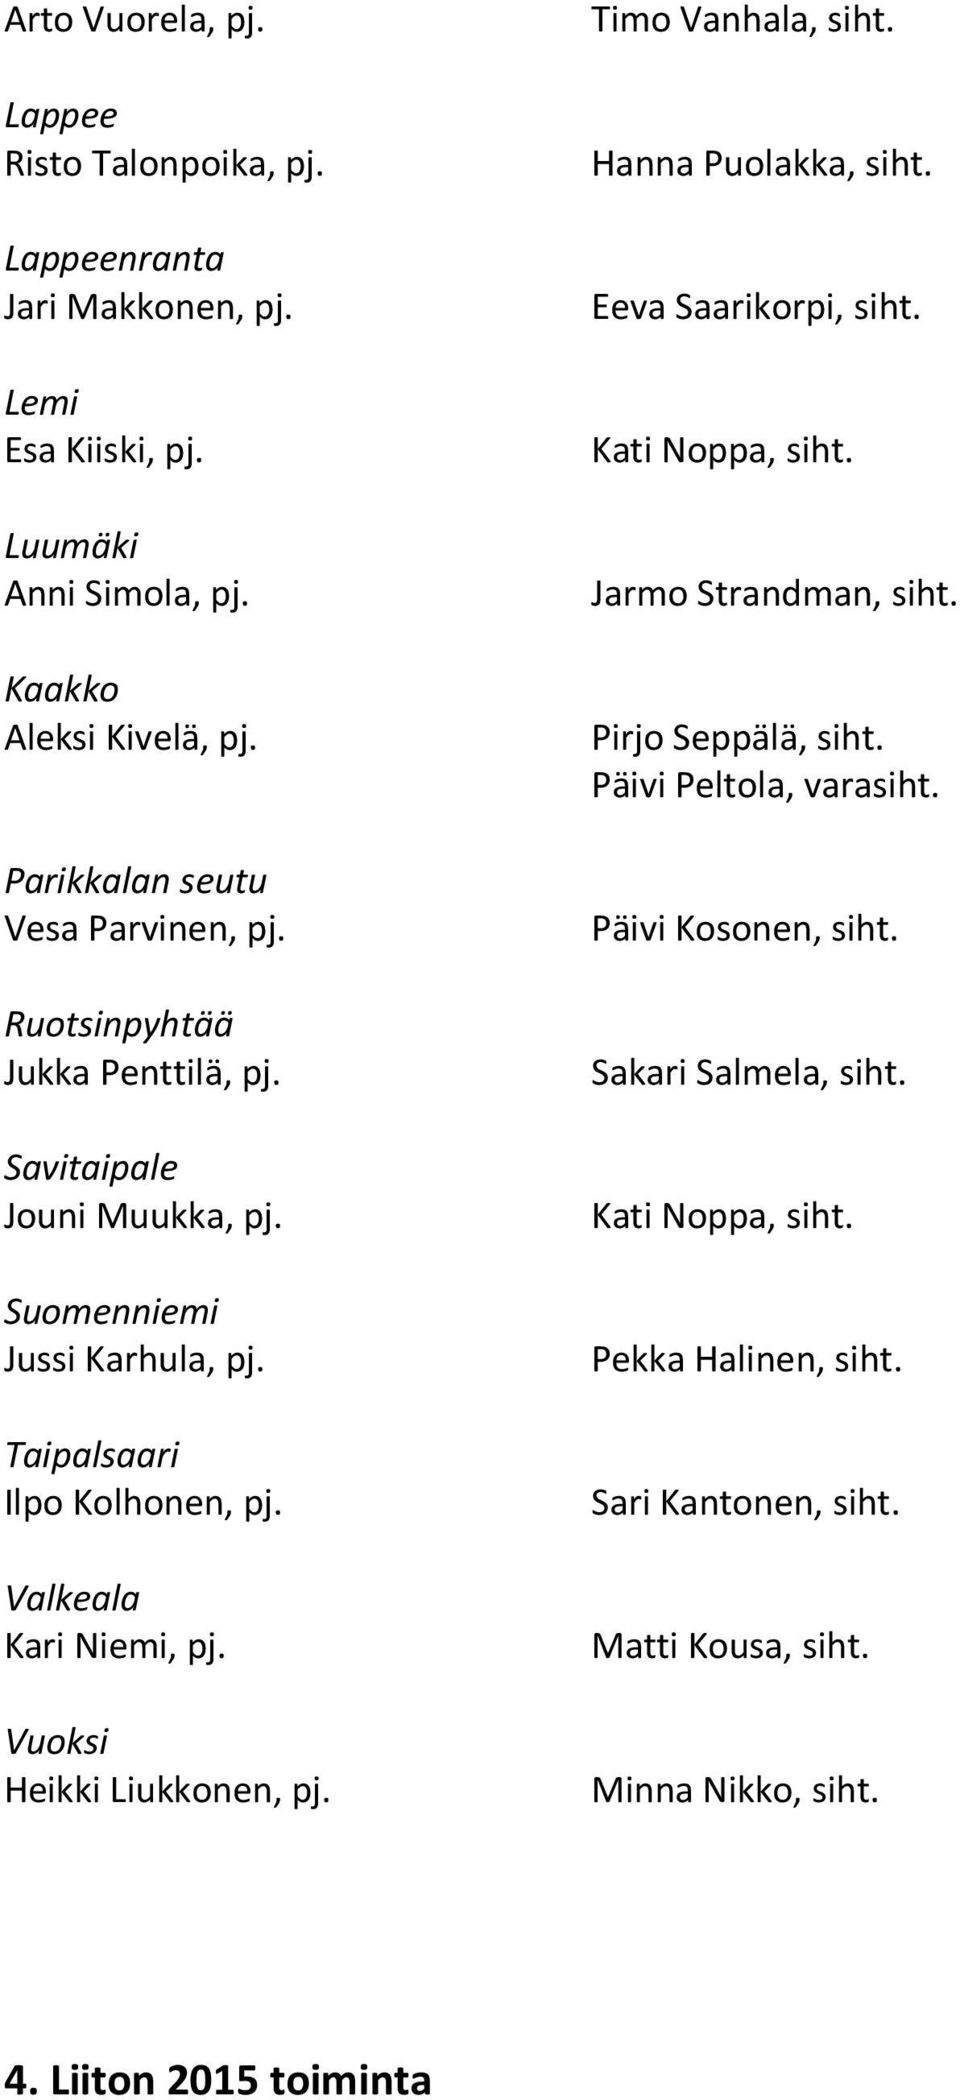 Valkeala Kari Niemi, pj. Vuoksi Heikki Liukkonen, pj. Timo Vanhala, siht. Hanna Puolakka, siht. Eeva Saarikorpi, siht. Kati Noppa, siht. Jarmo Strandman, siht.